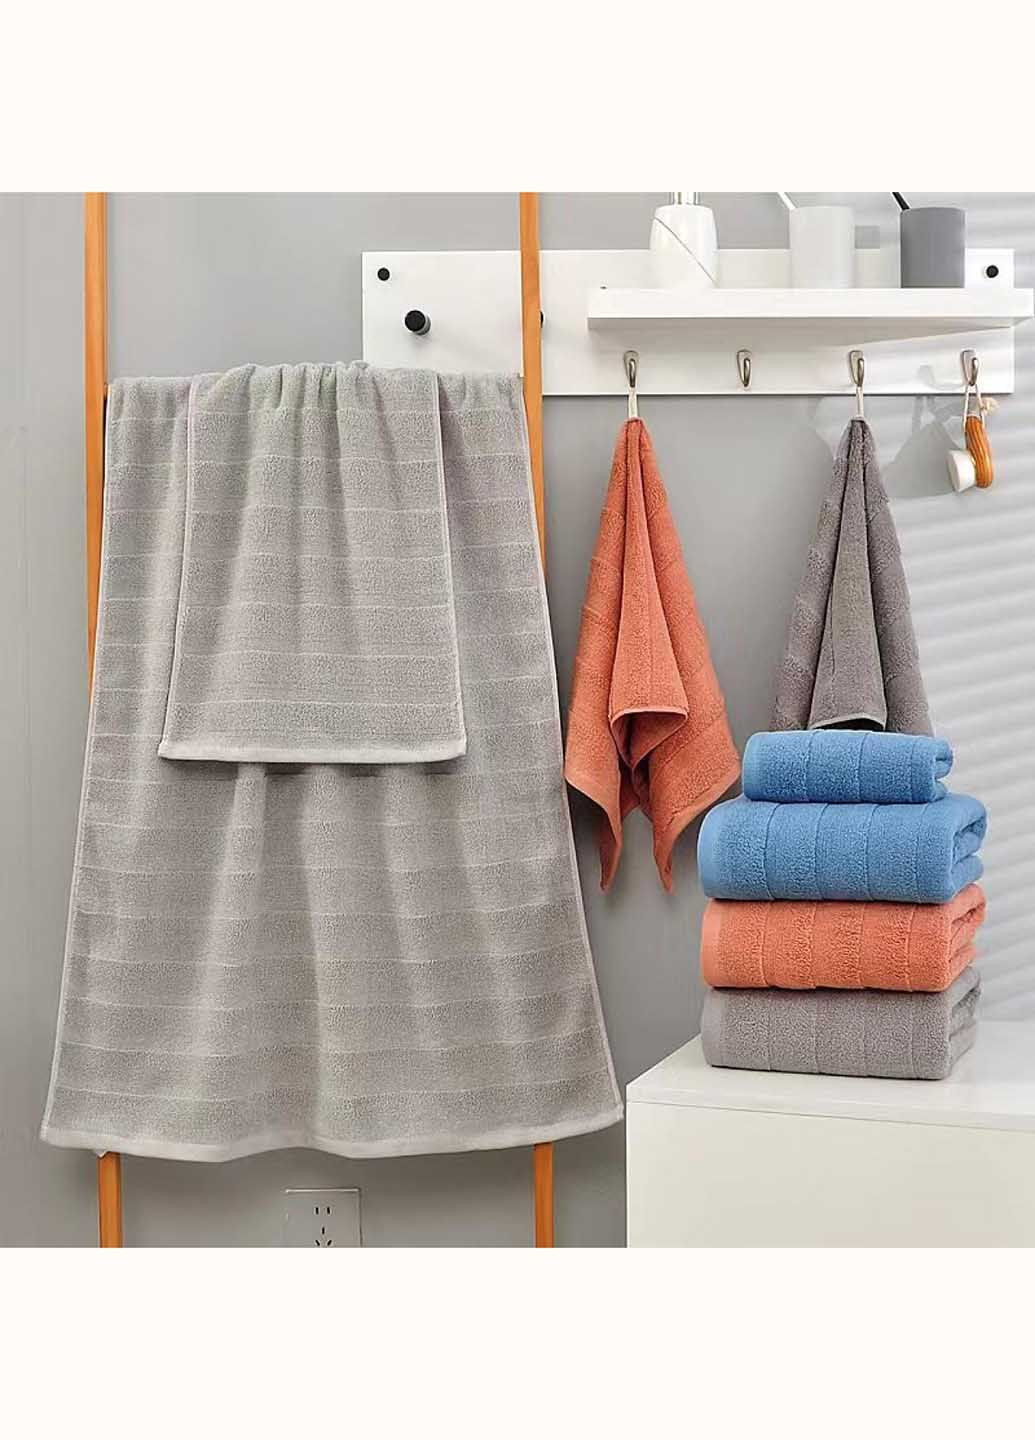 Homedec полотенце лицевое махровое 100х50 см полоска серый производство - Турция